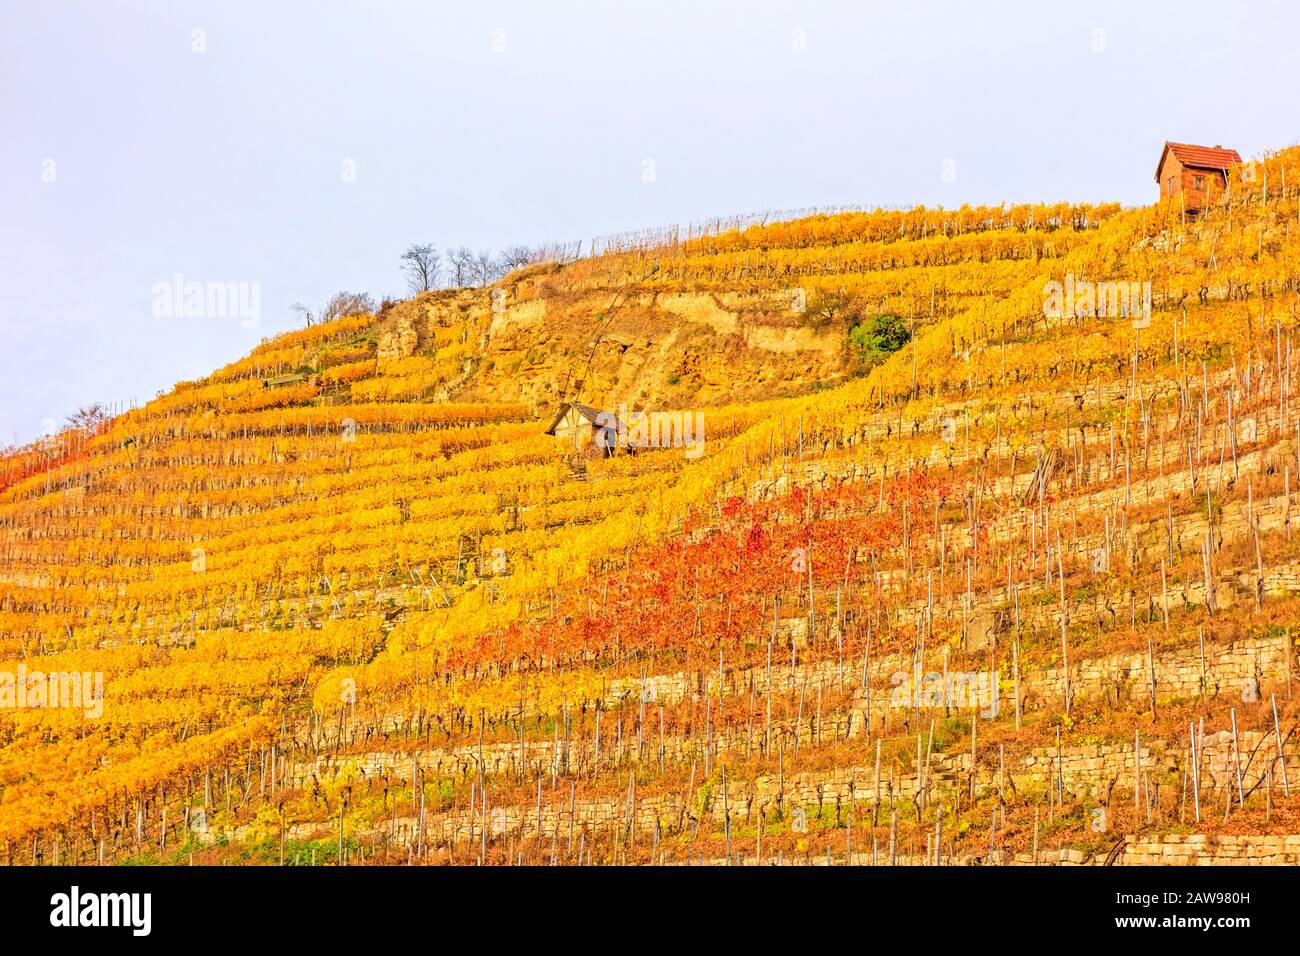 Vigneto in autunno - vinicoltura capanne di vinificatori tra viti in collina con foglie giallo dorato Foto Stock